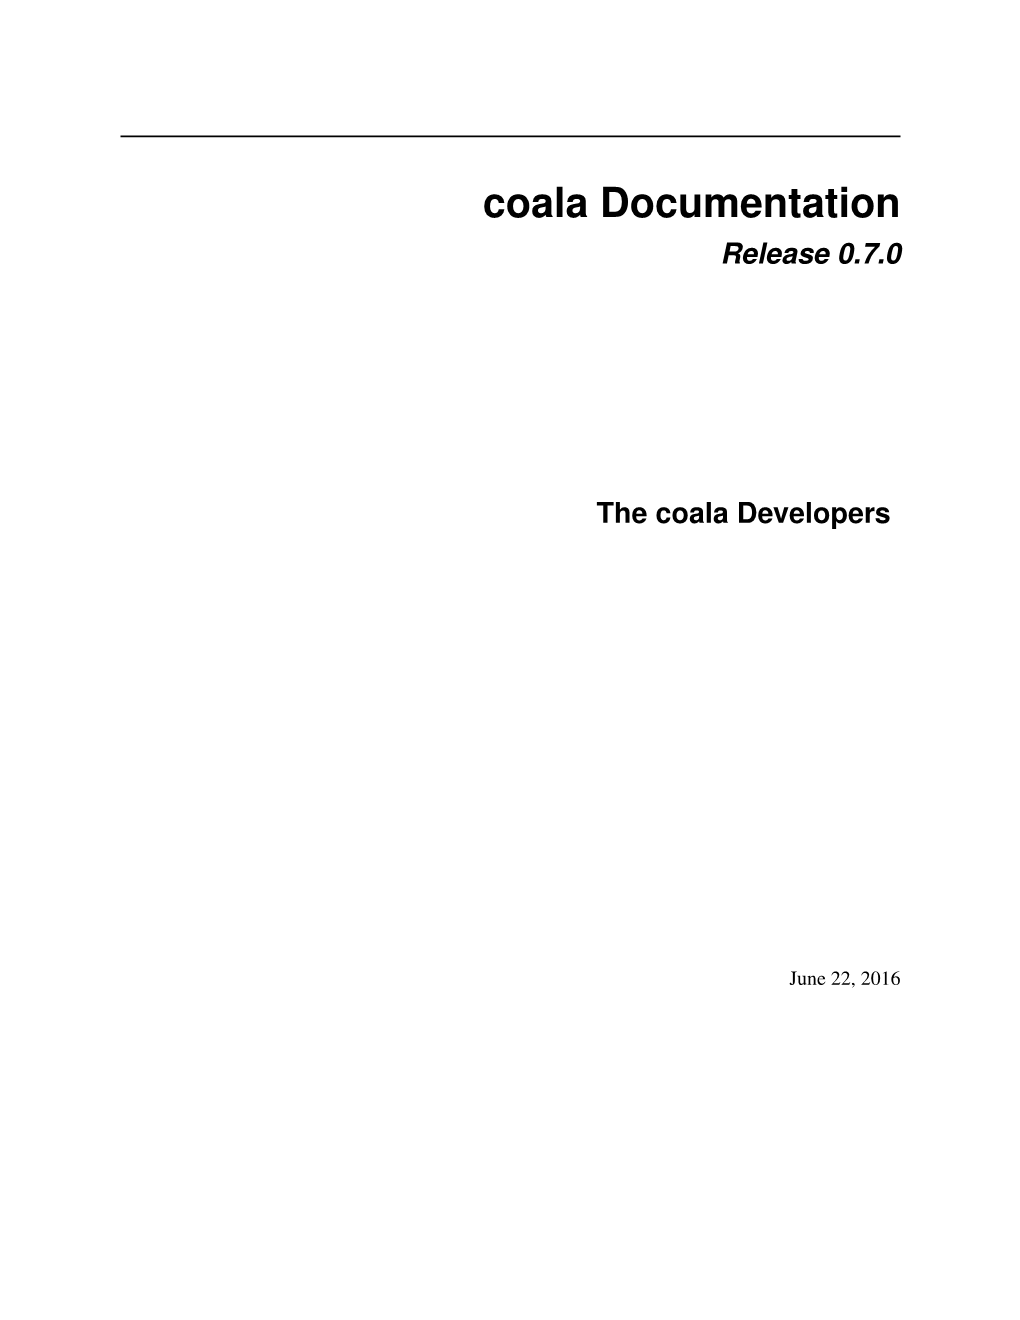 Coala Documentation Release 0.7.0